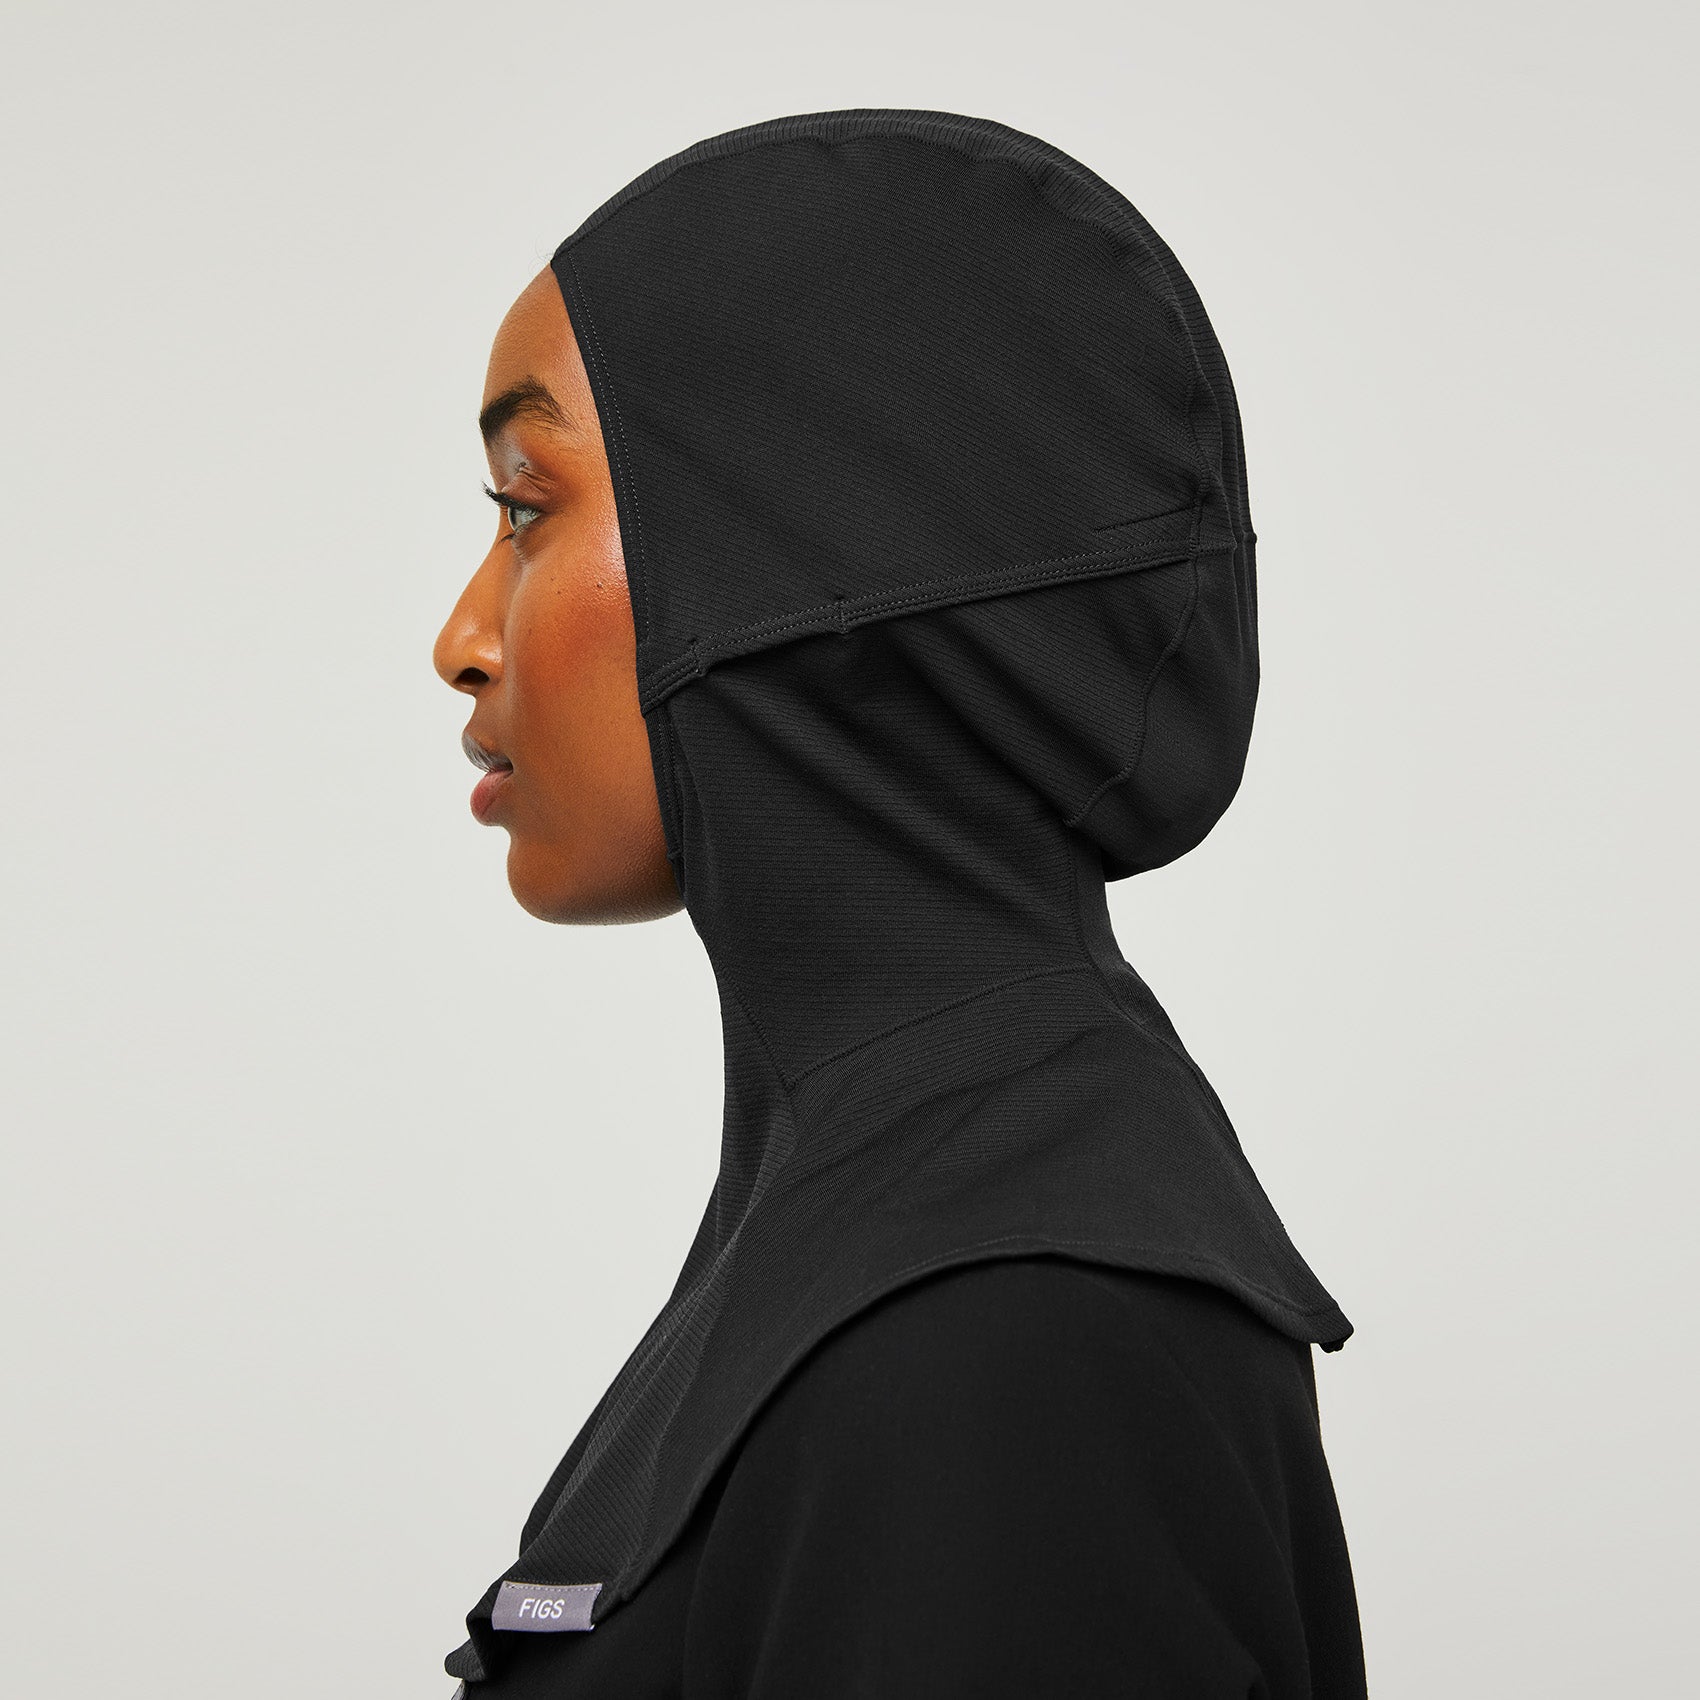 https://cdn.shopify.com/s/files/1/0139/8942/products/Womens-Hijab-black-4.jpg?v=1635381501